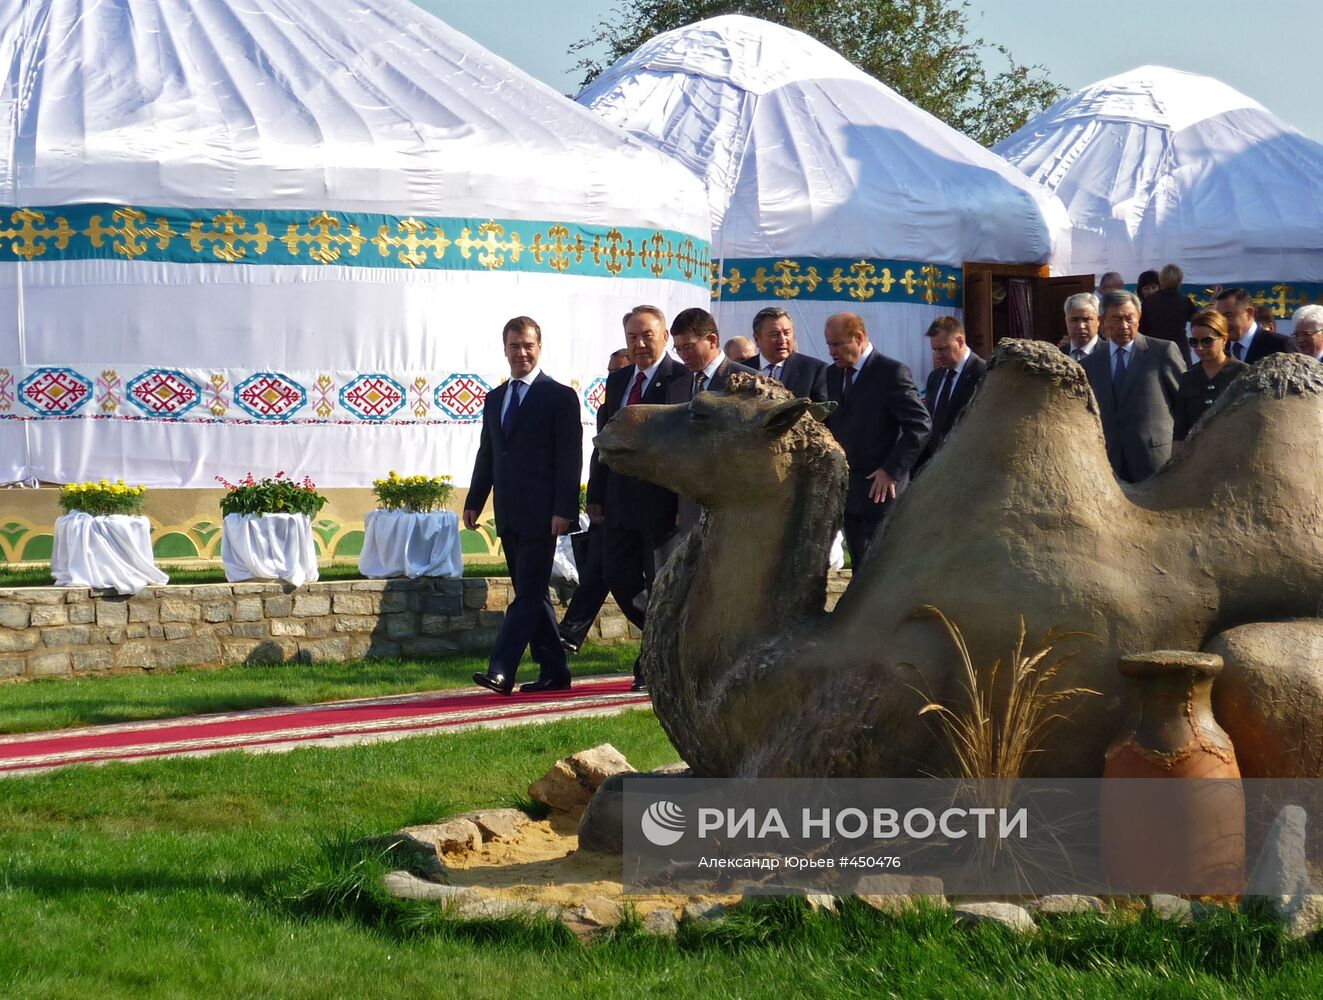 Рабочая поездка Д. Медведева в Оренбург